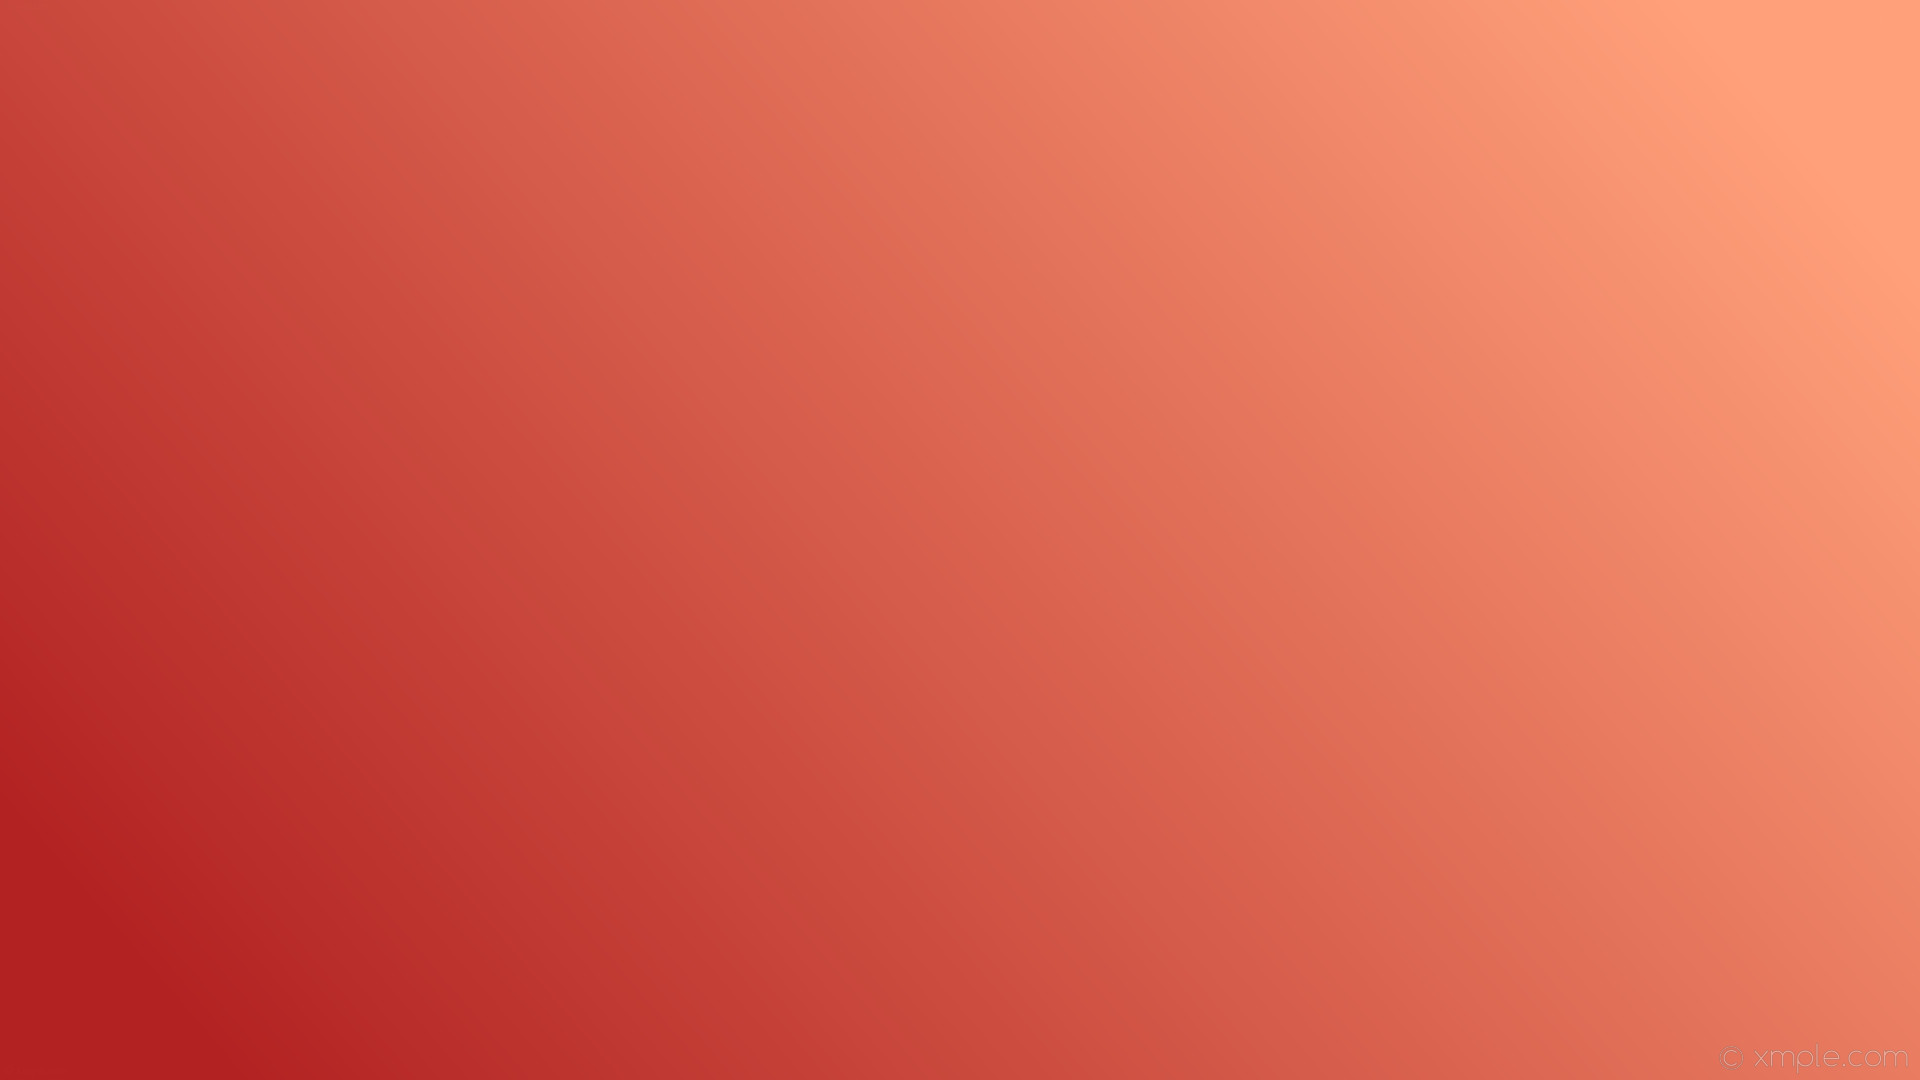 1920x1080 wallpaper gradient linear red light salmon fire brick #ffa07a #b22222 15Â°